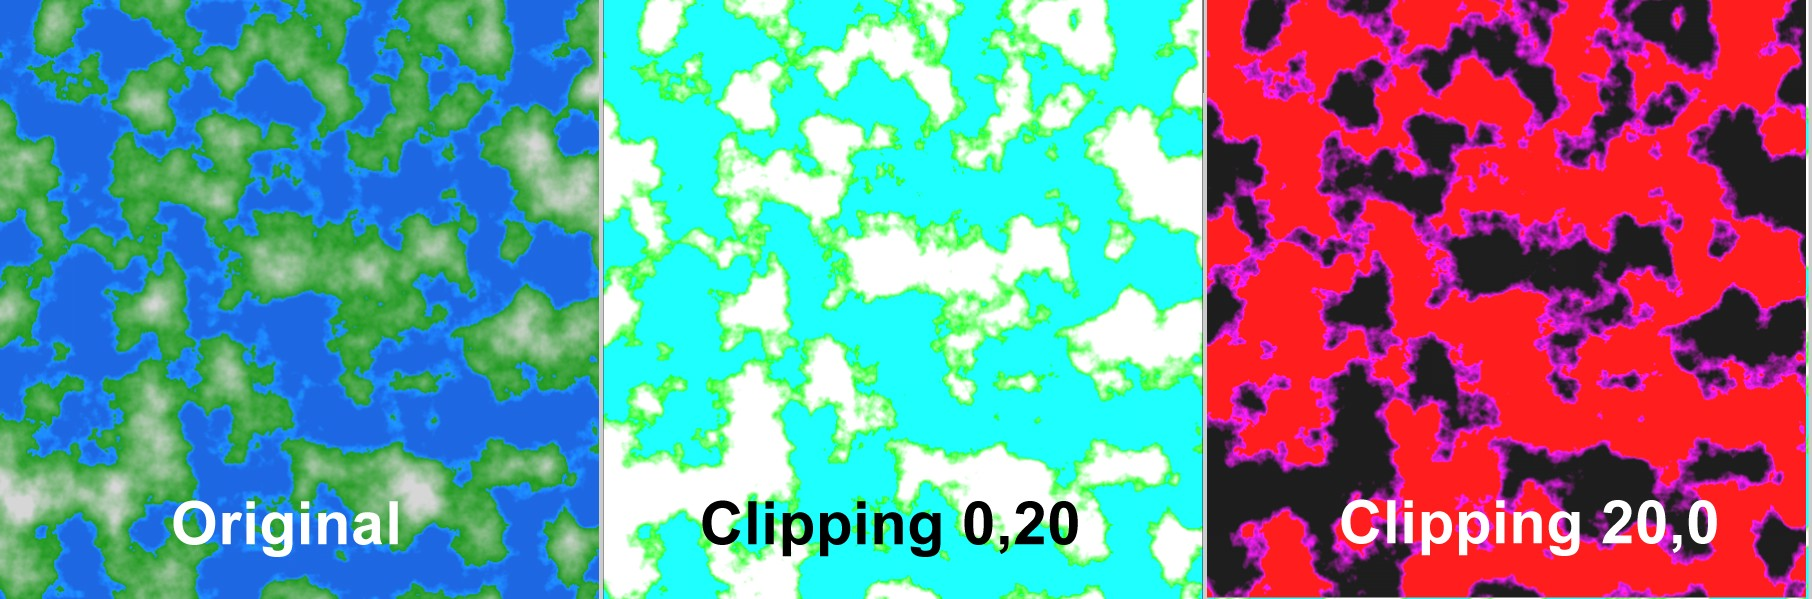 ClippingIllus.png